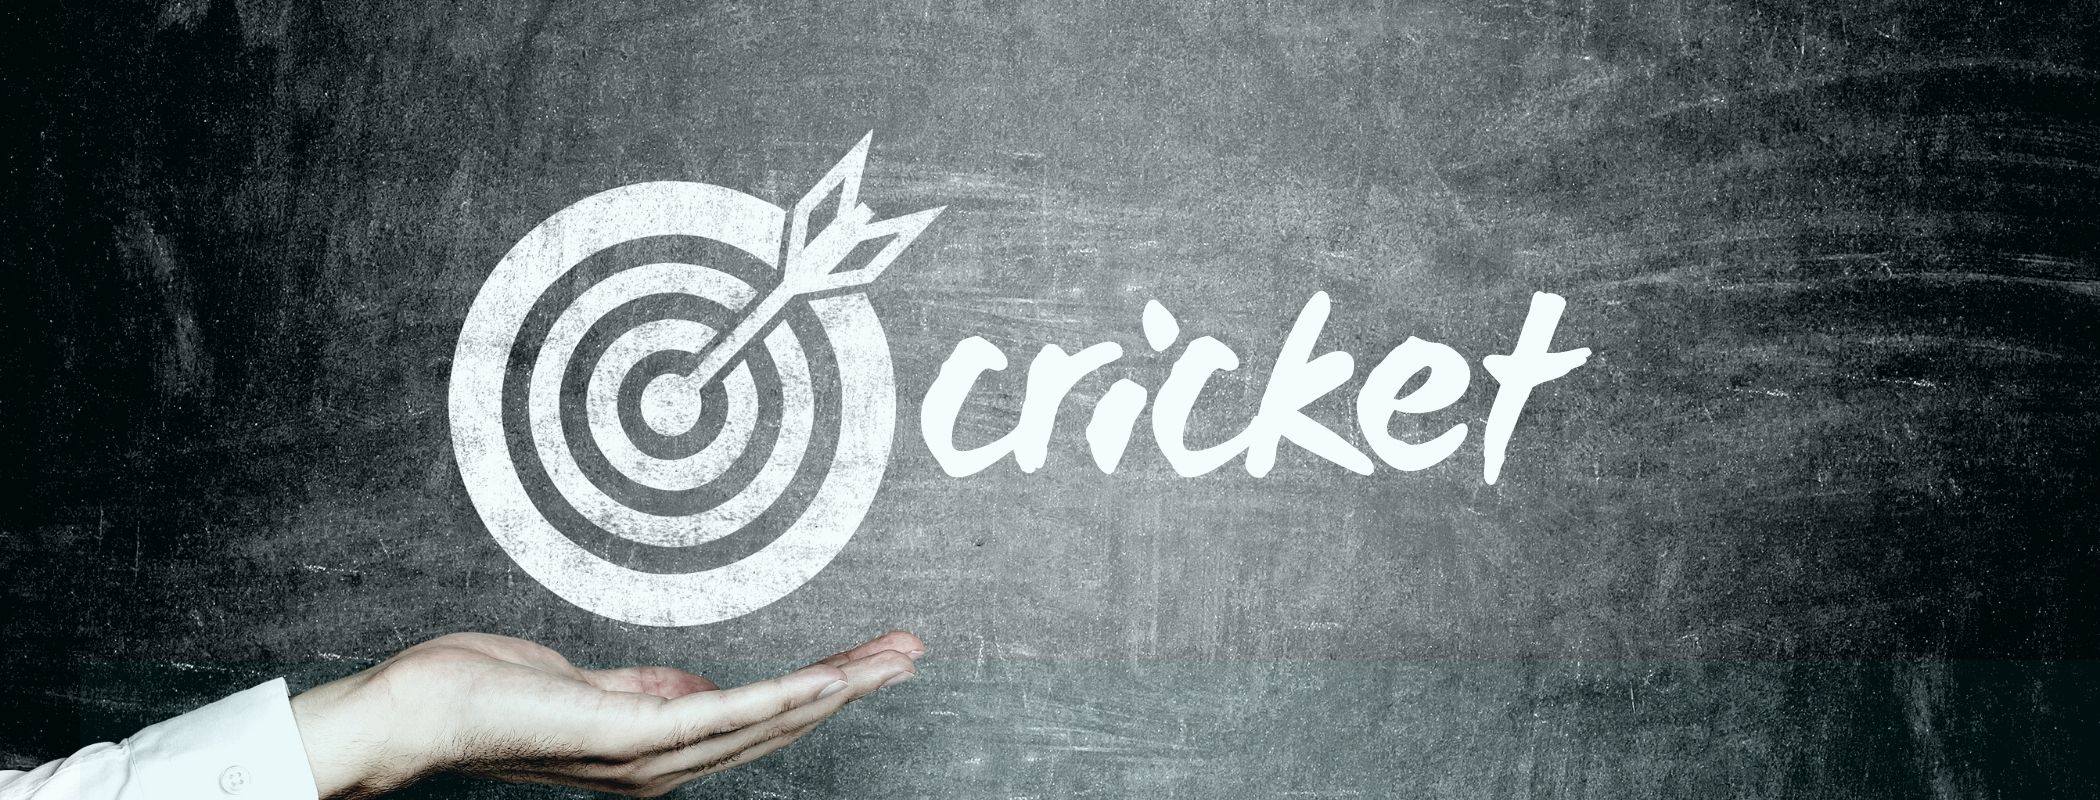 cricket scoring bullseye